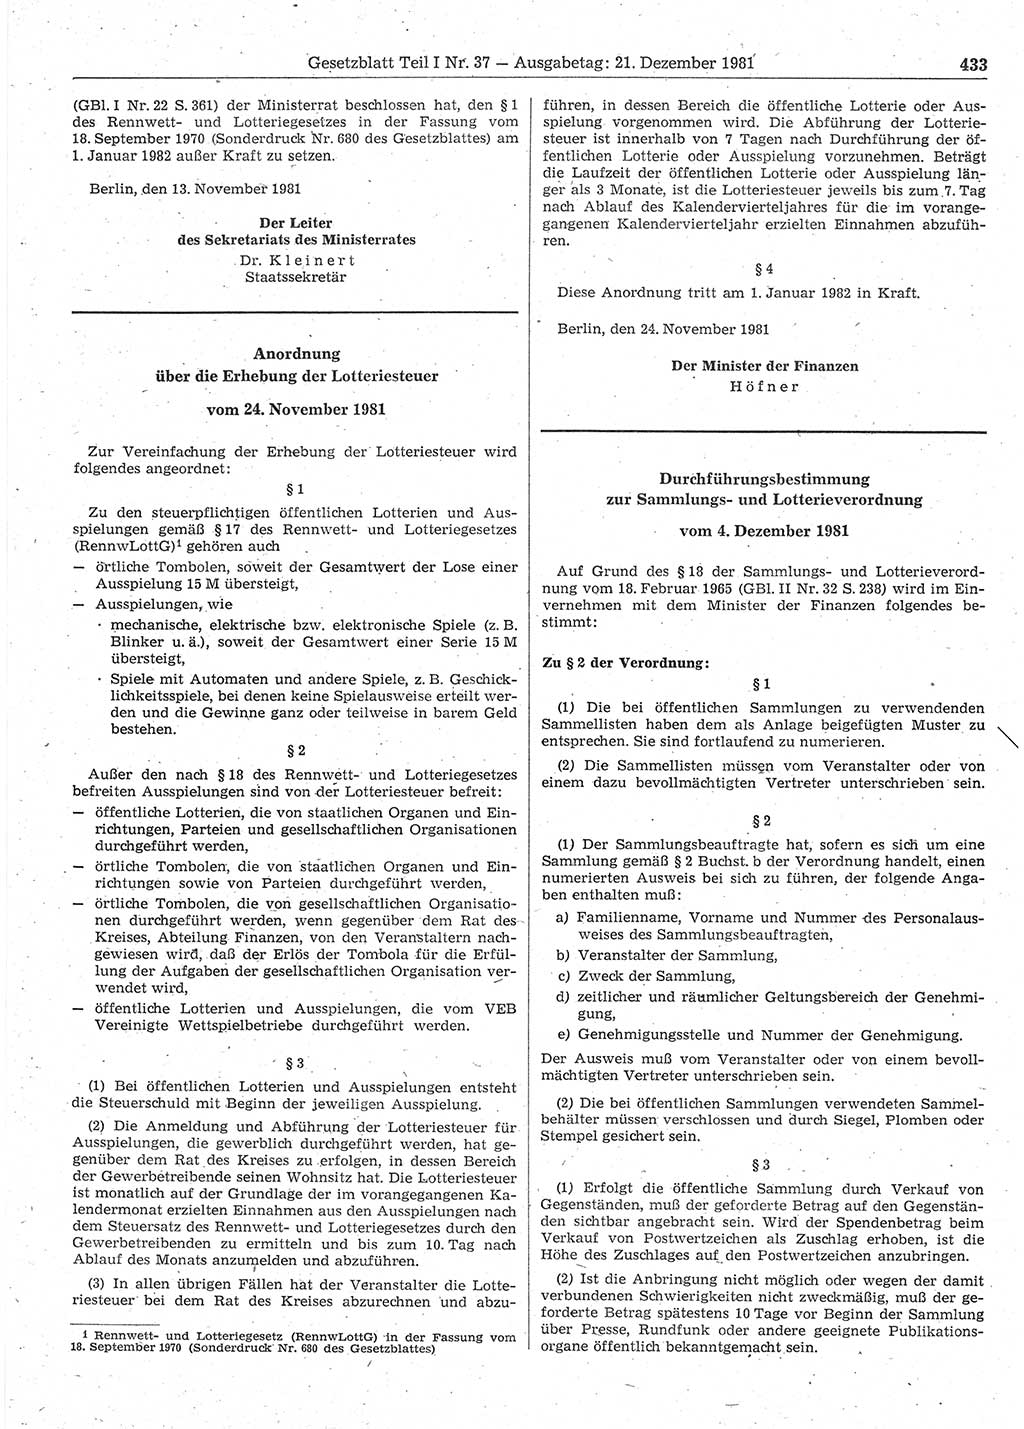 Gesetzblatt (GBl.) der Deutschen Demokratischen Republik (DDR) Teil Ⅰ 1981, Seite 433 (GBl. DDR Ⅰ 1981, S. 433)